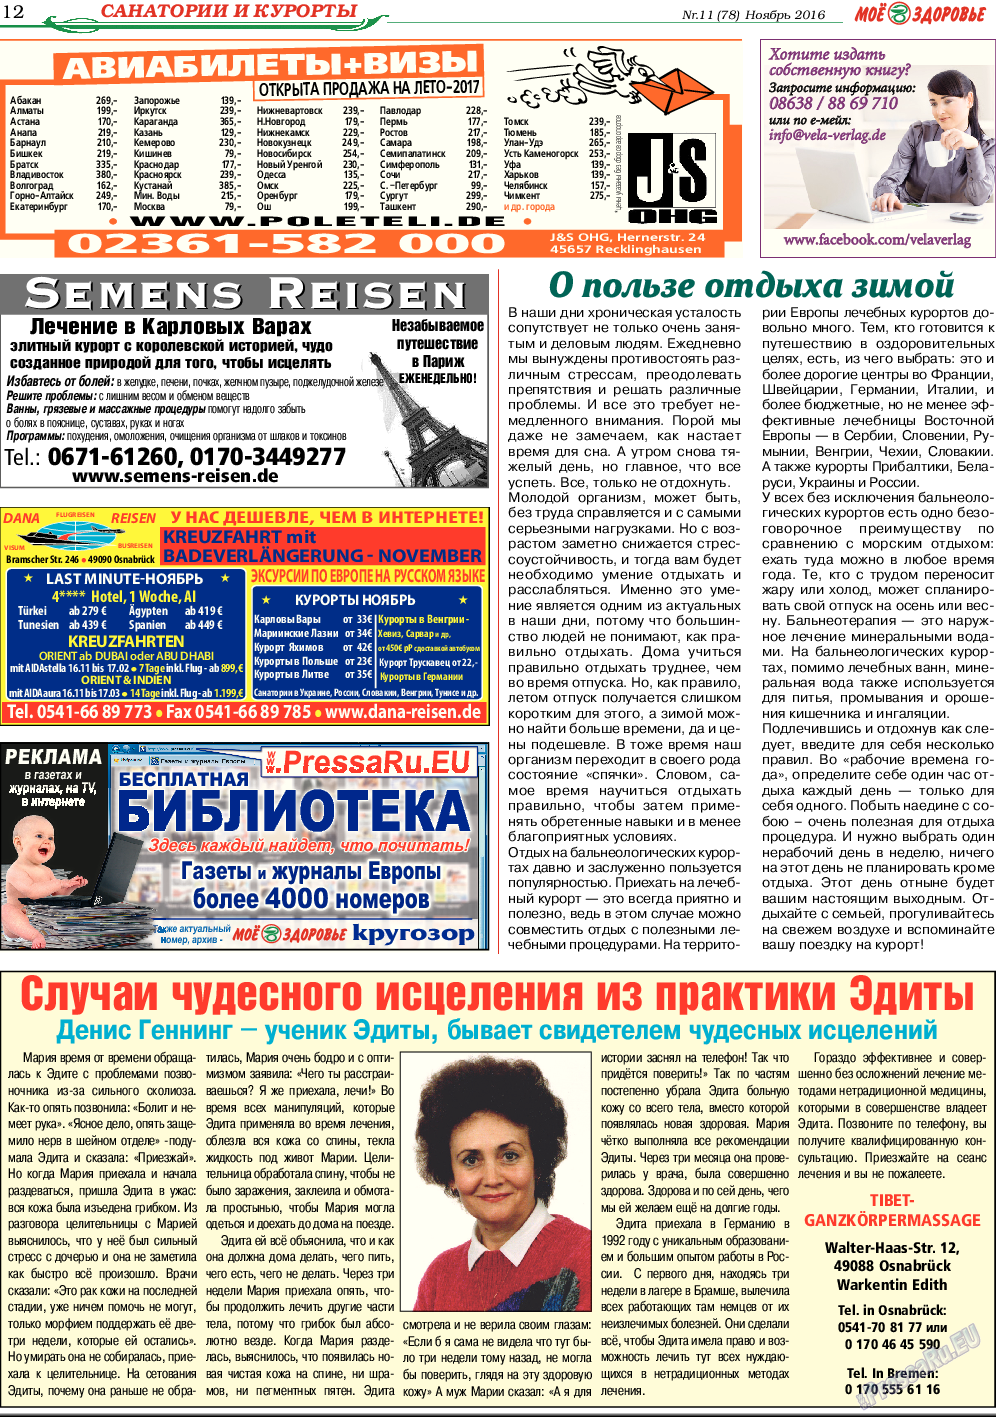 Кругозор (газета). 2016 год, номер 11, стр. 12